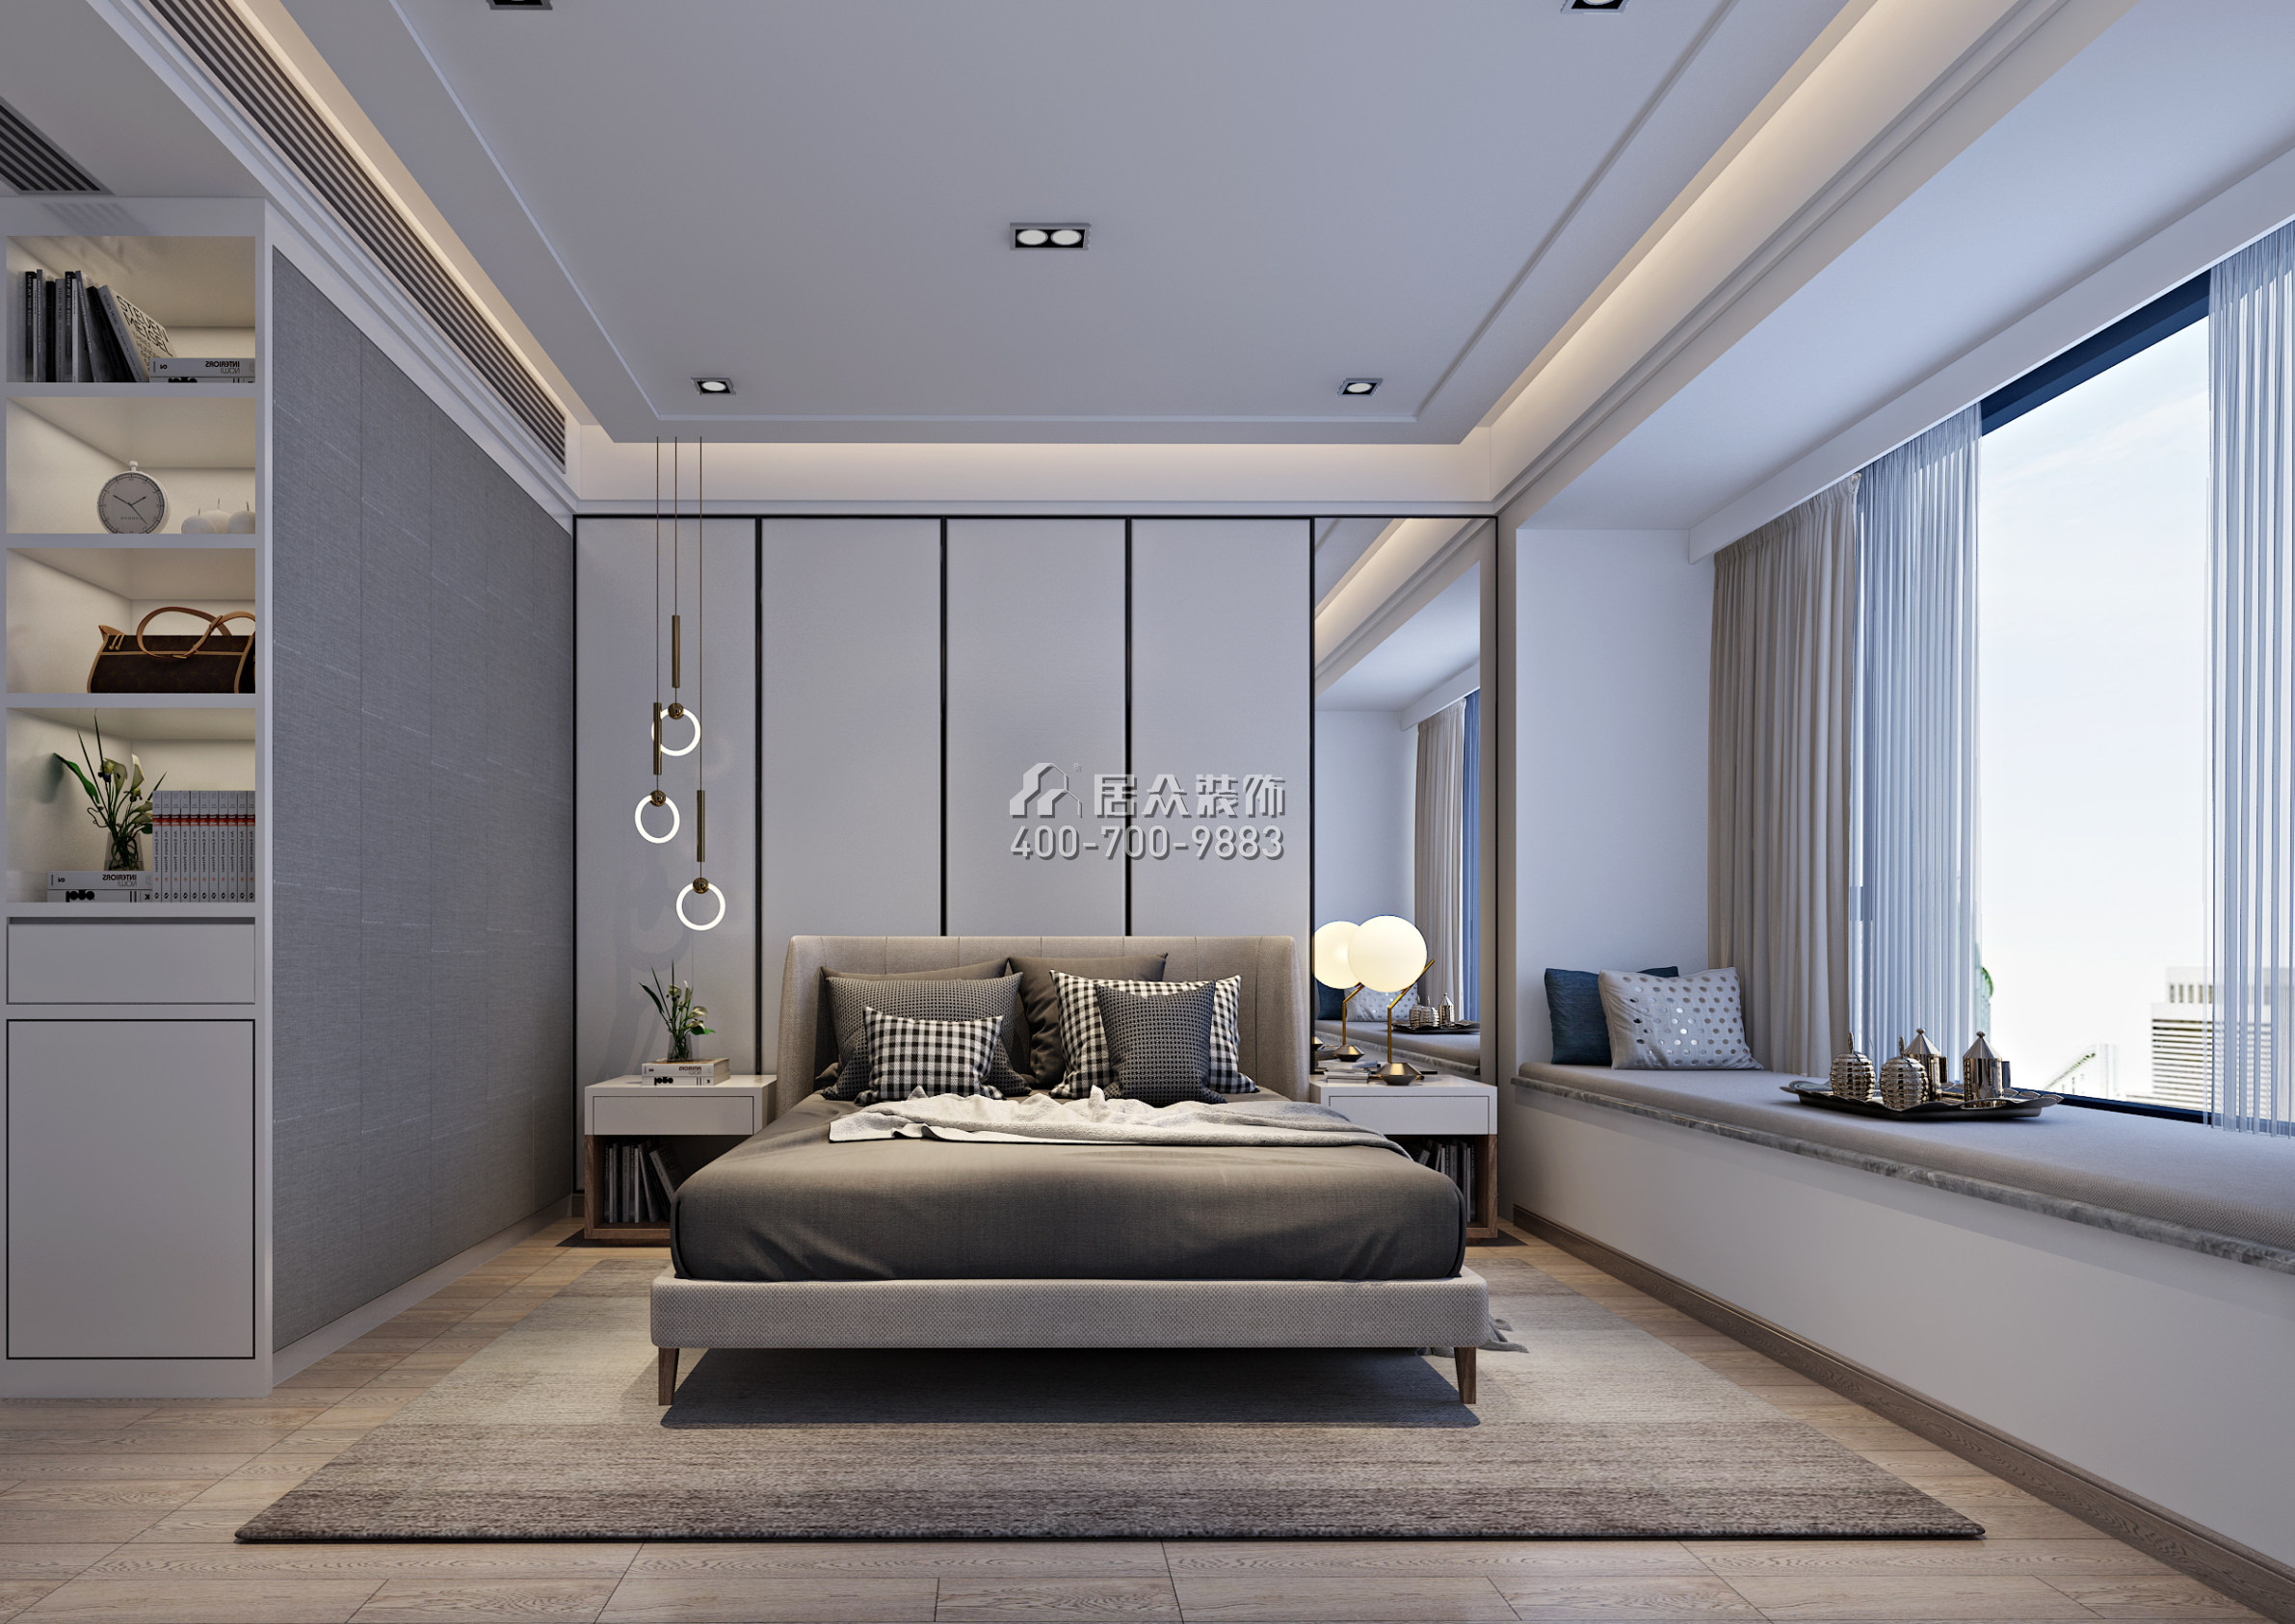 香山美墅四期169平方米現代簡約風格平層戶型臥室裝修效果圖